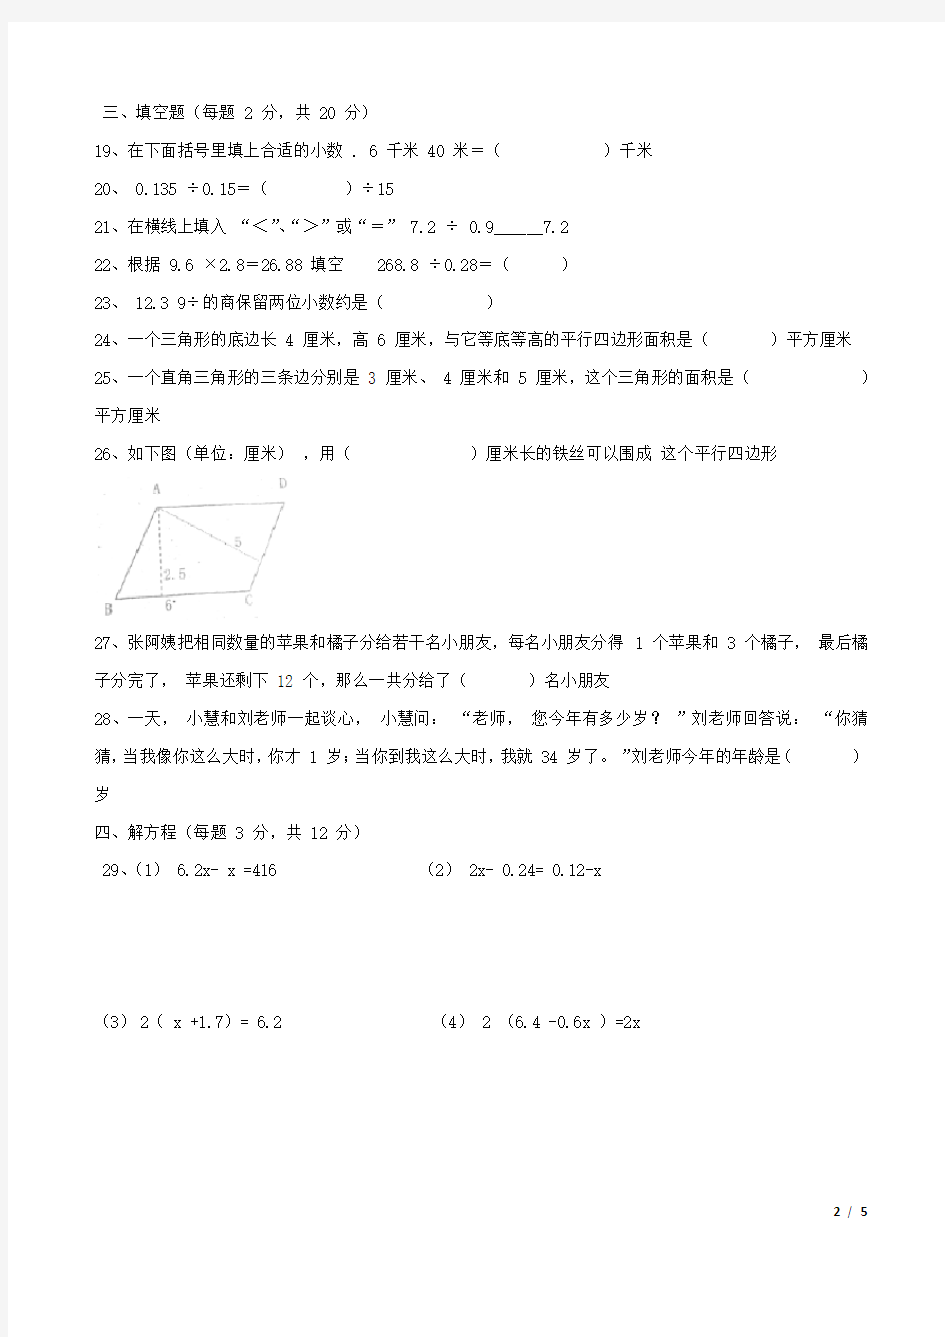 上海建平中学西校预备班分班考试数学试卷(含答案)